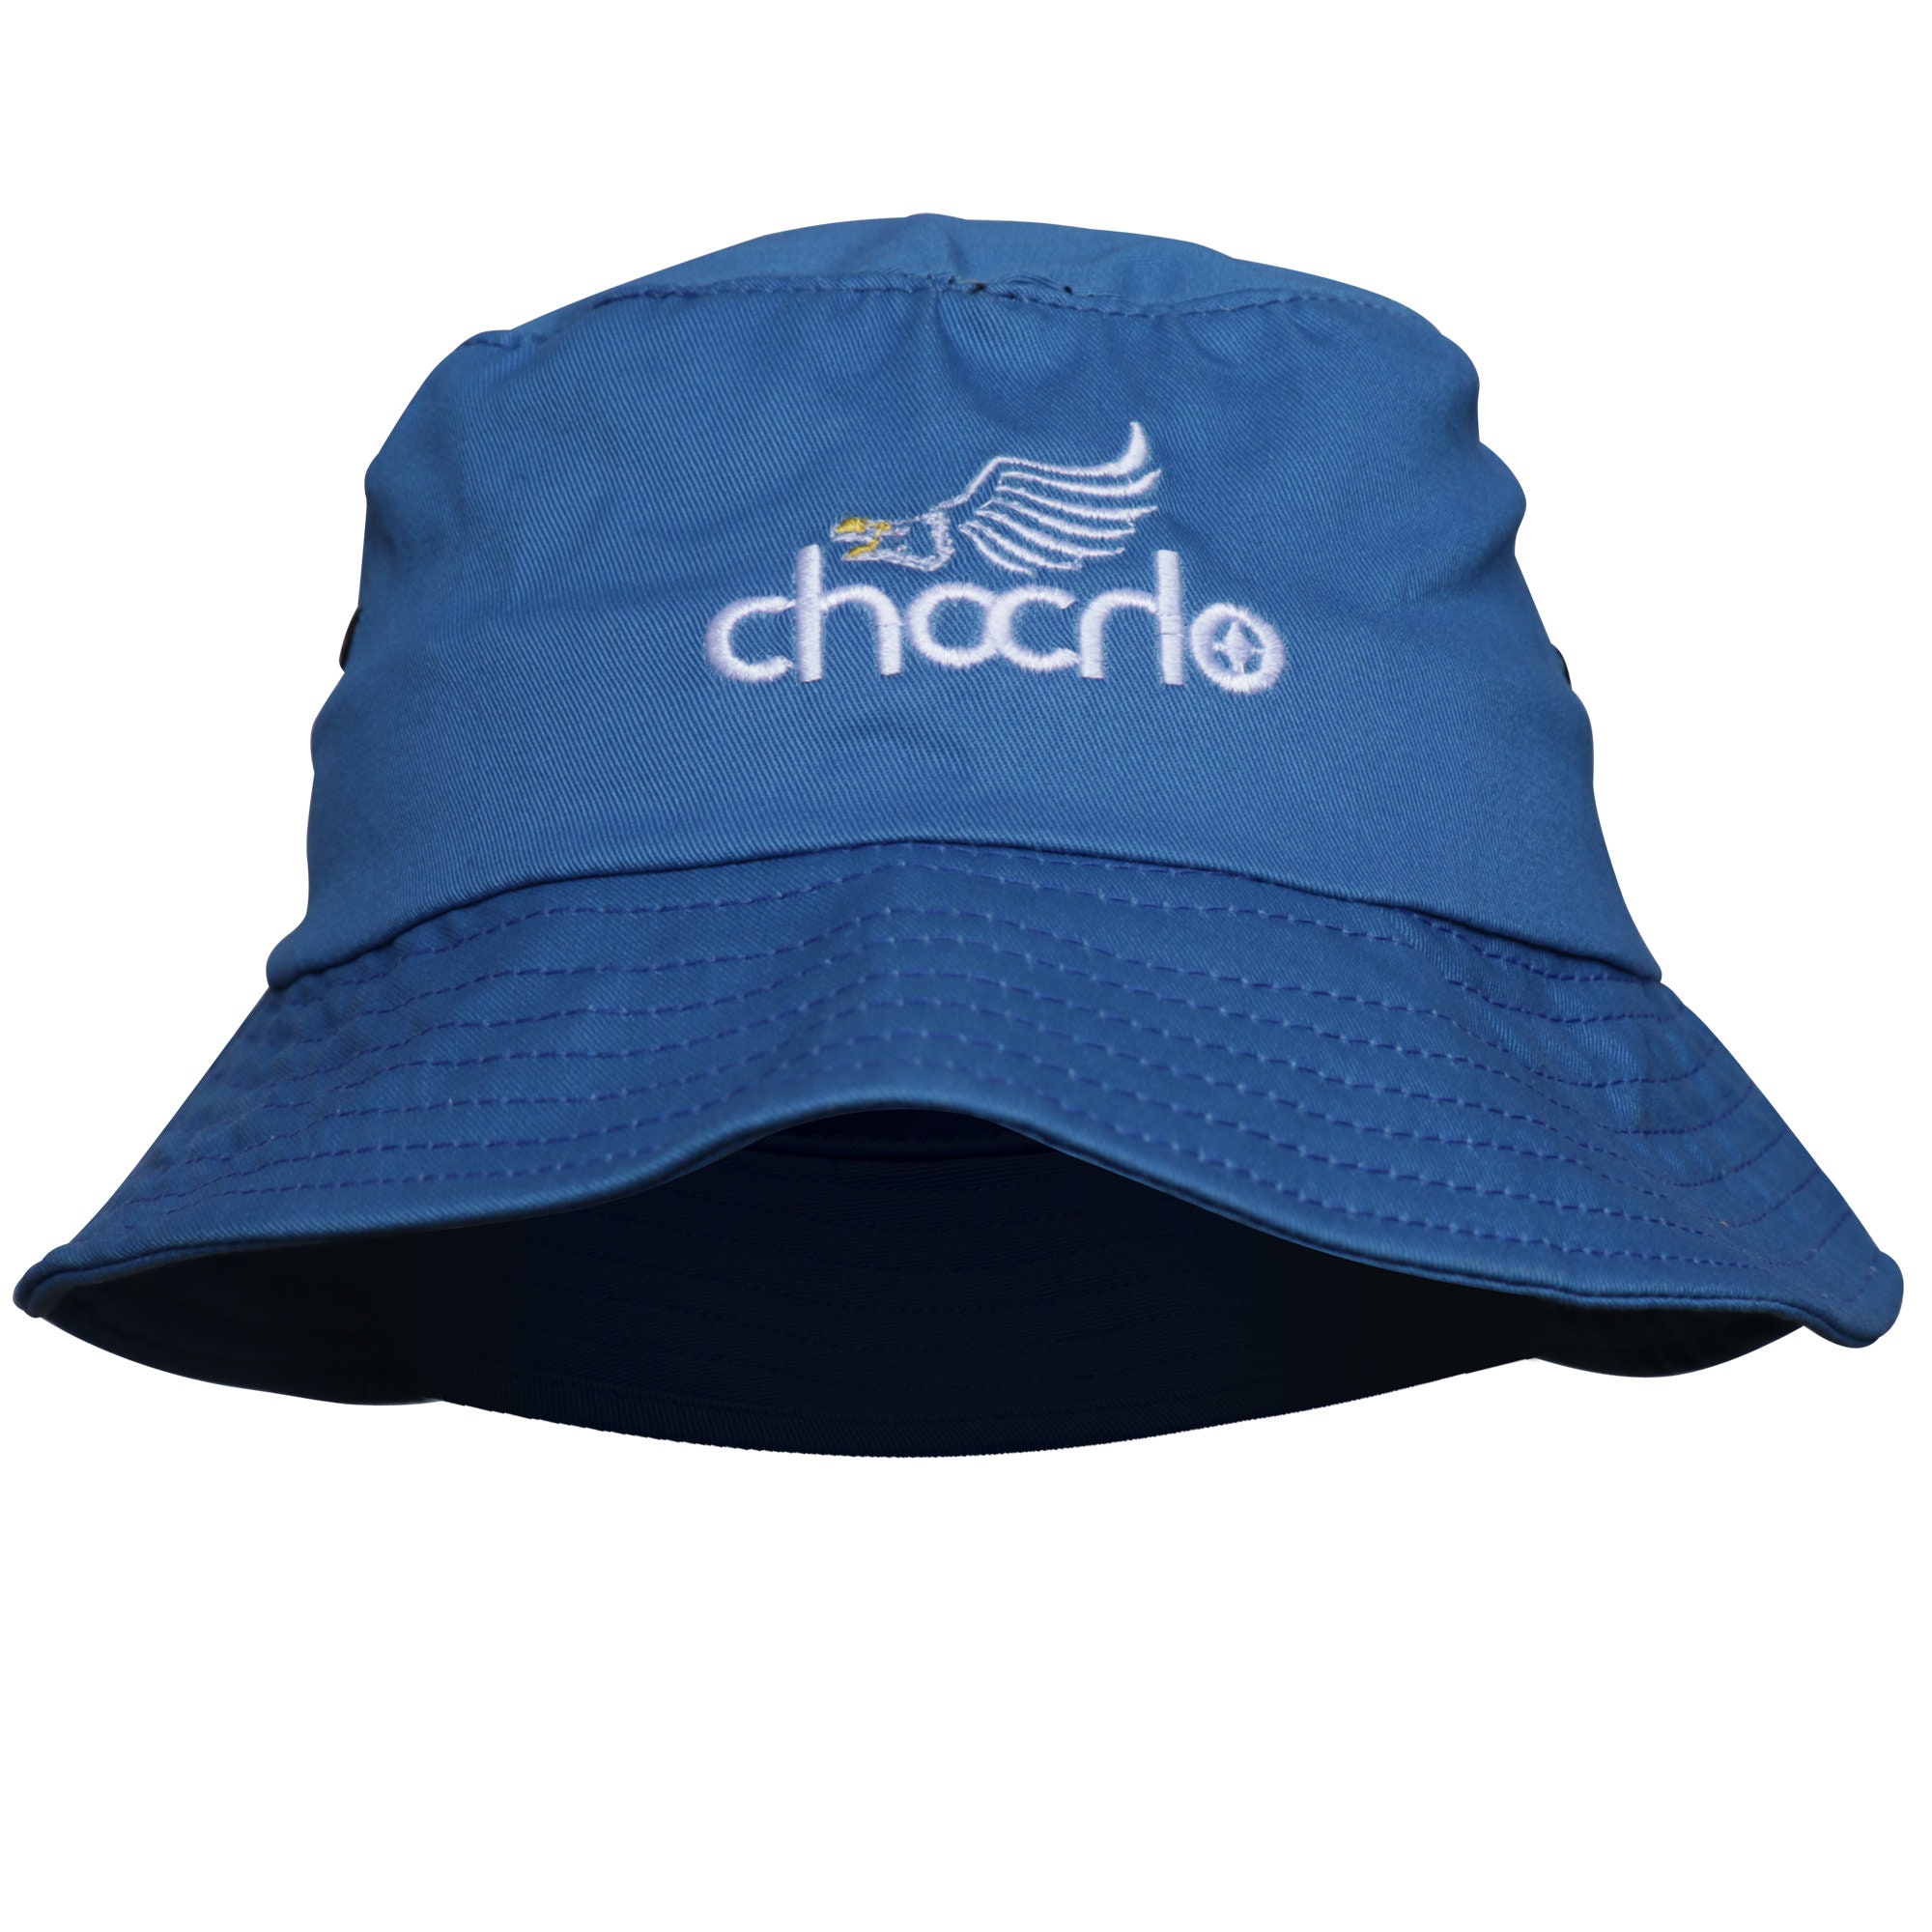 6 Color Bucket Hat, Wide Brim Bucket Hats, Fisherman Hat, Women's